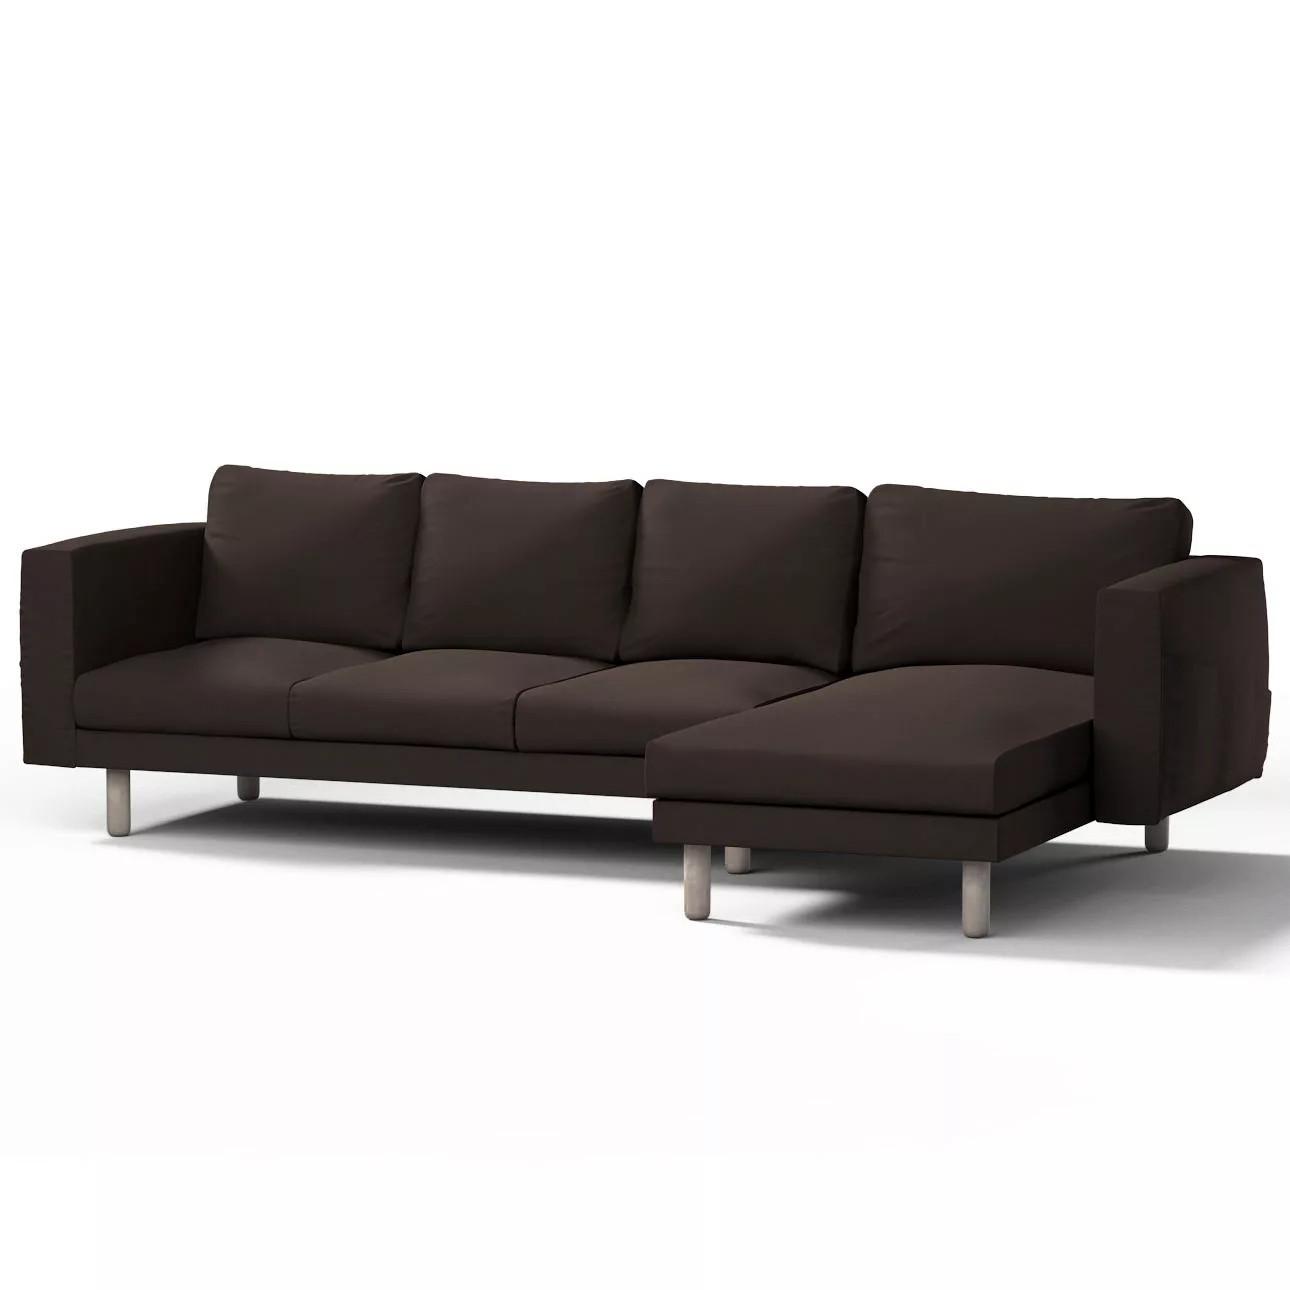 Bezug für Norsborg 4-Sitzer Sofa mit Recamiere, Kaffee, Norsborg Bezug für günstig online kaufen